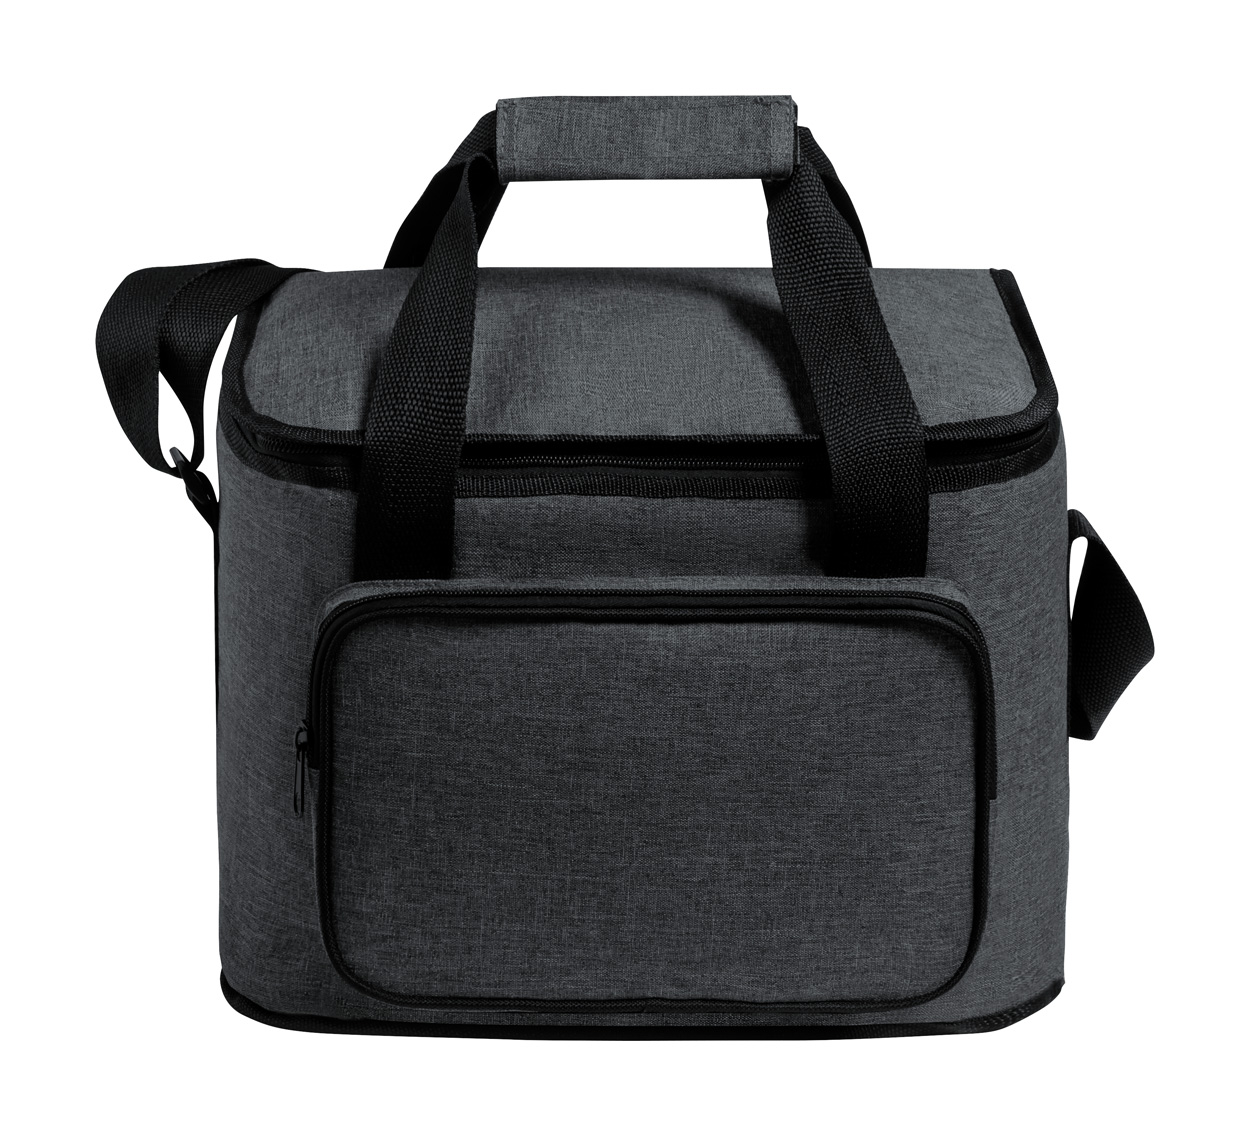 Botum RPET cooler bag - black